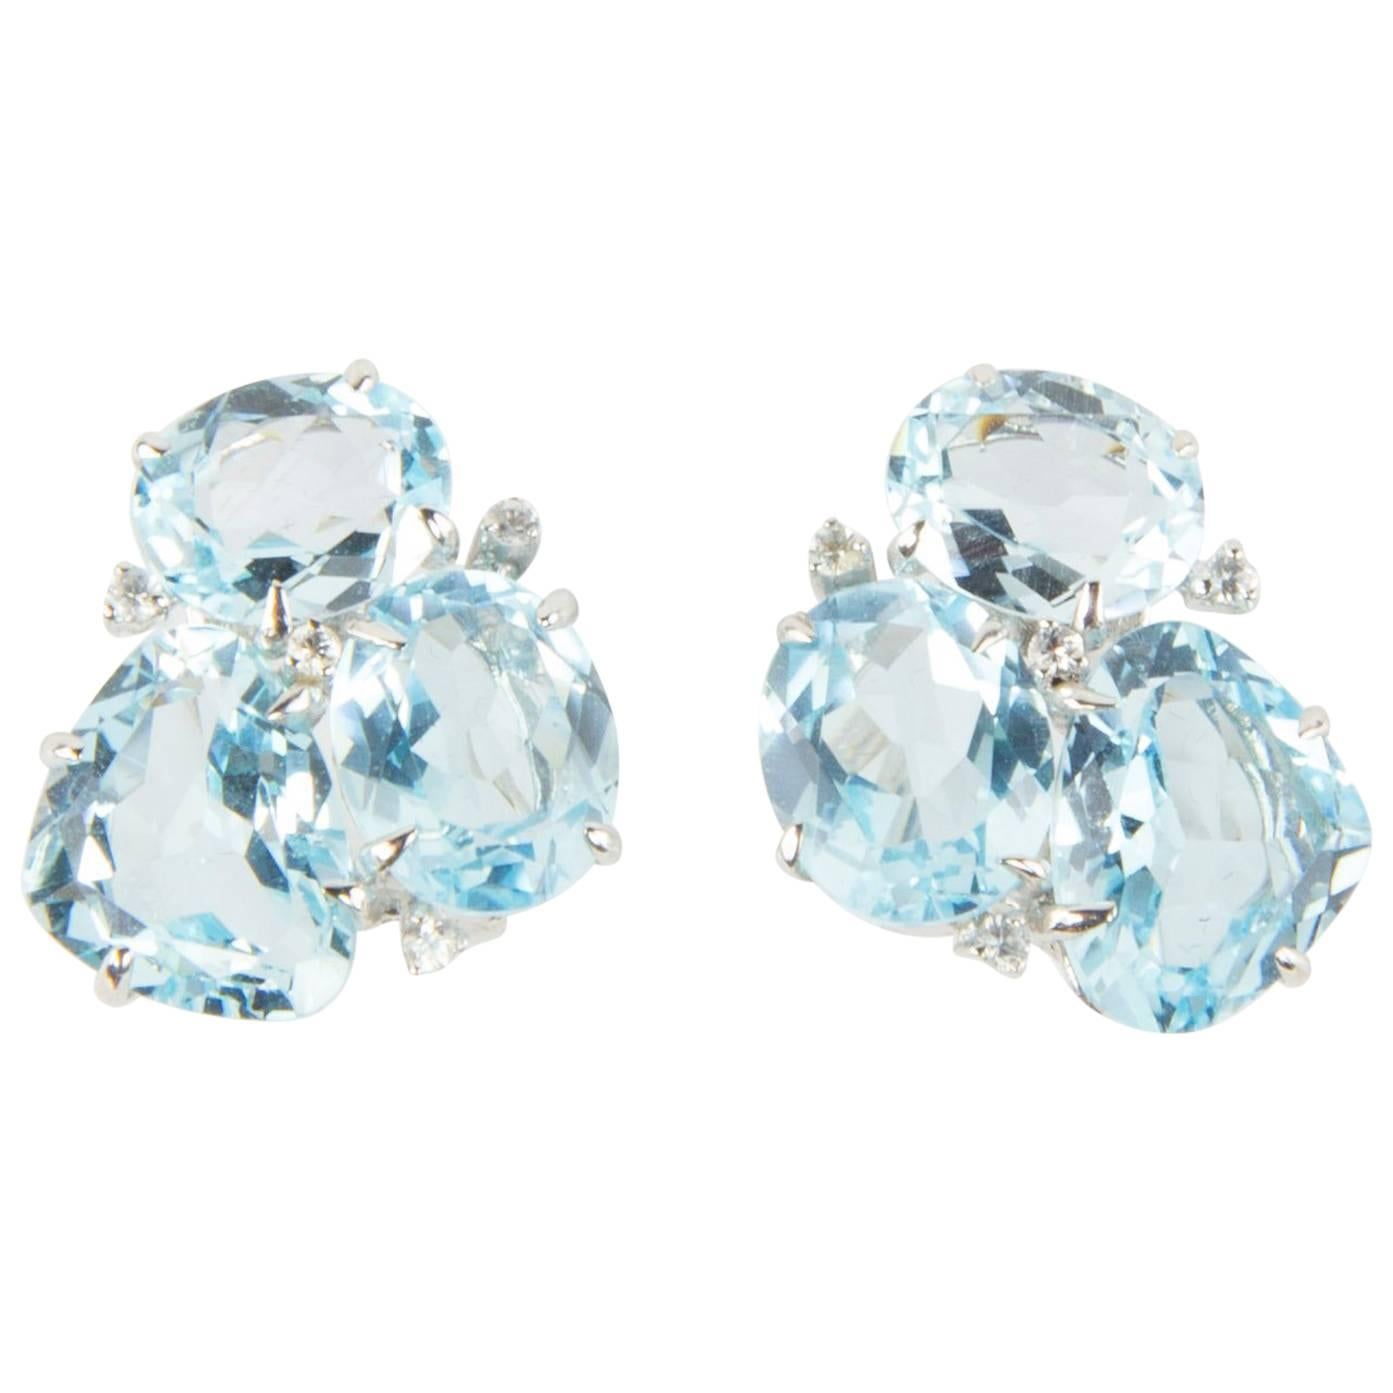 Aquamarine and Diamond Stud Statement Earrings